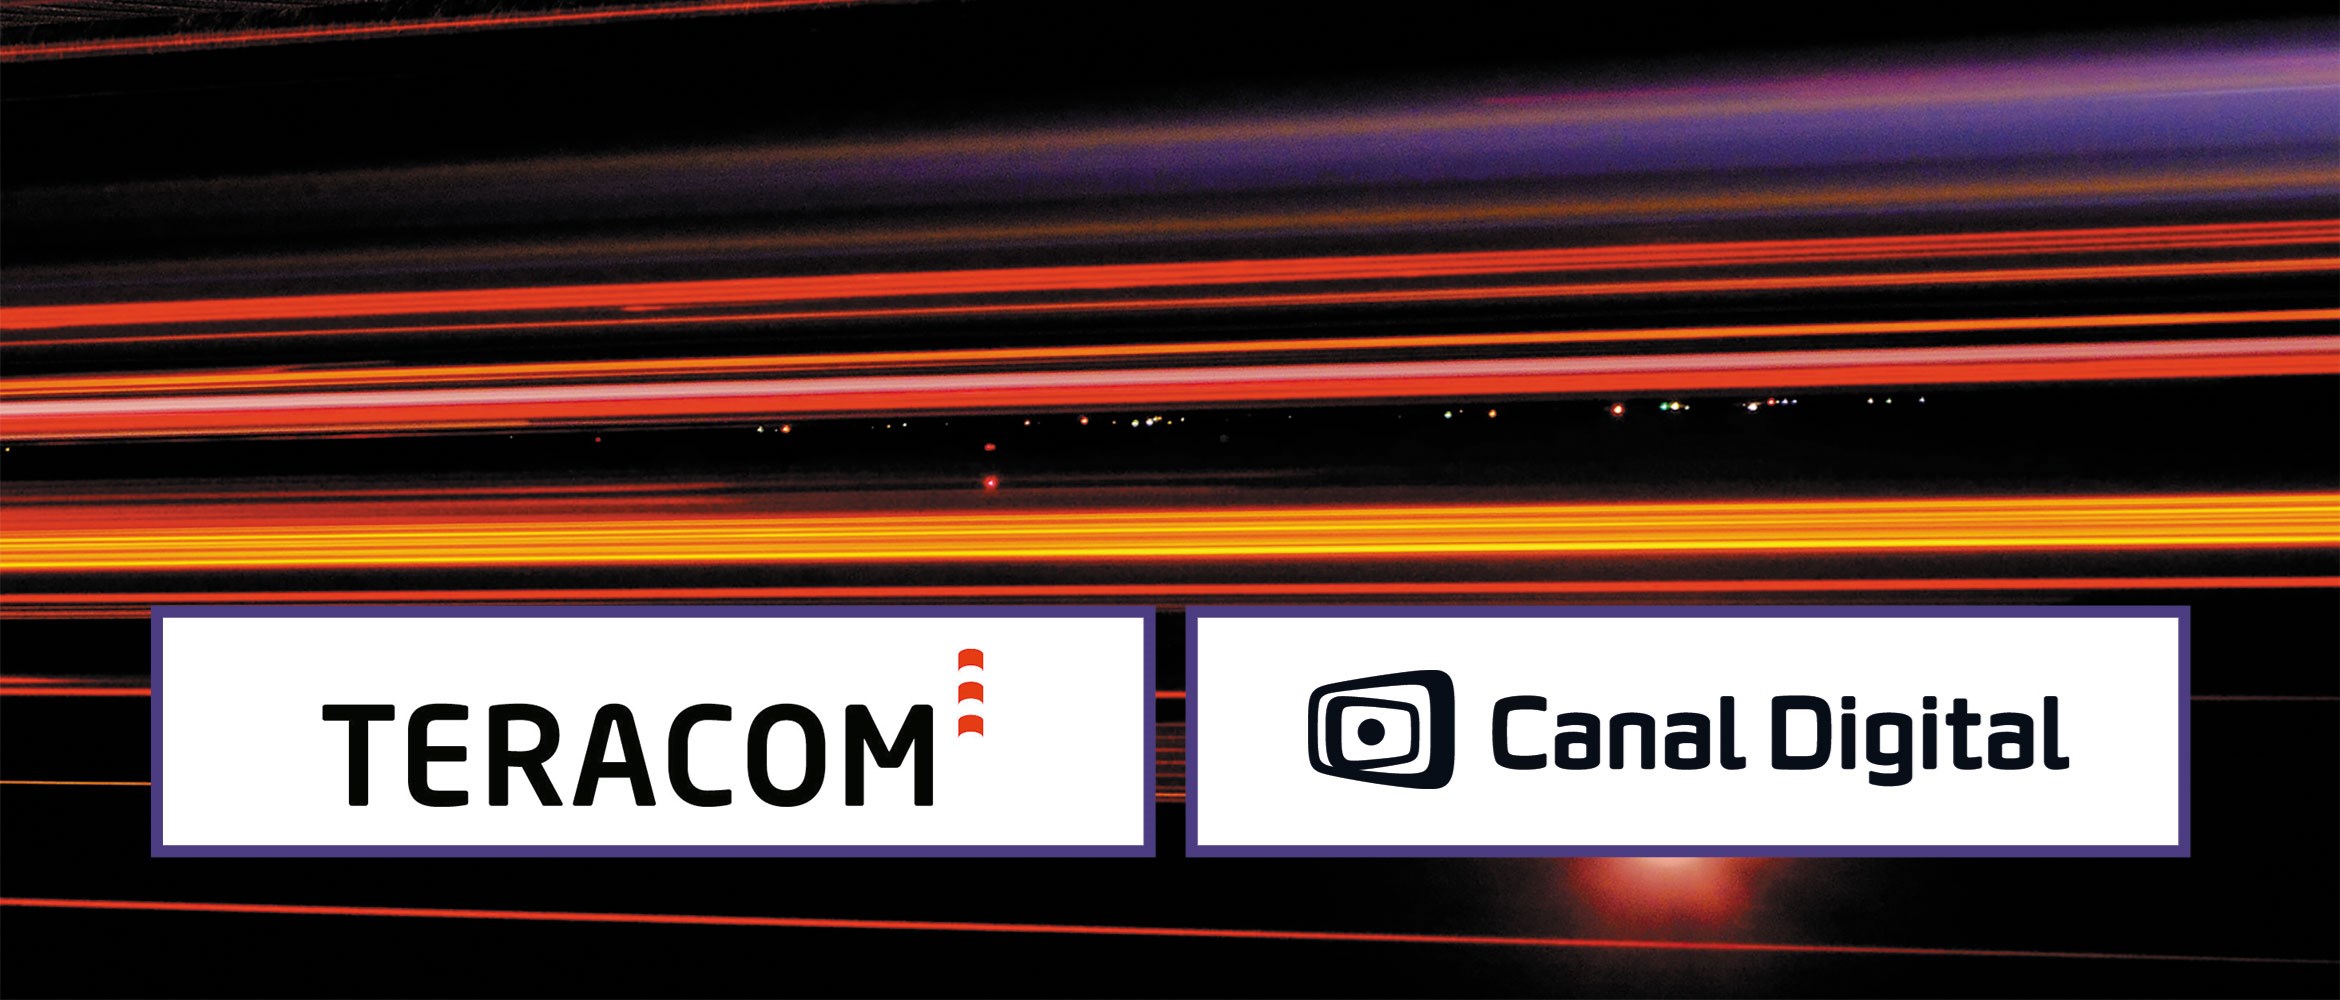 Canal Digital indgår samarbejde med Teracom